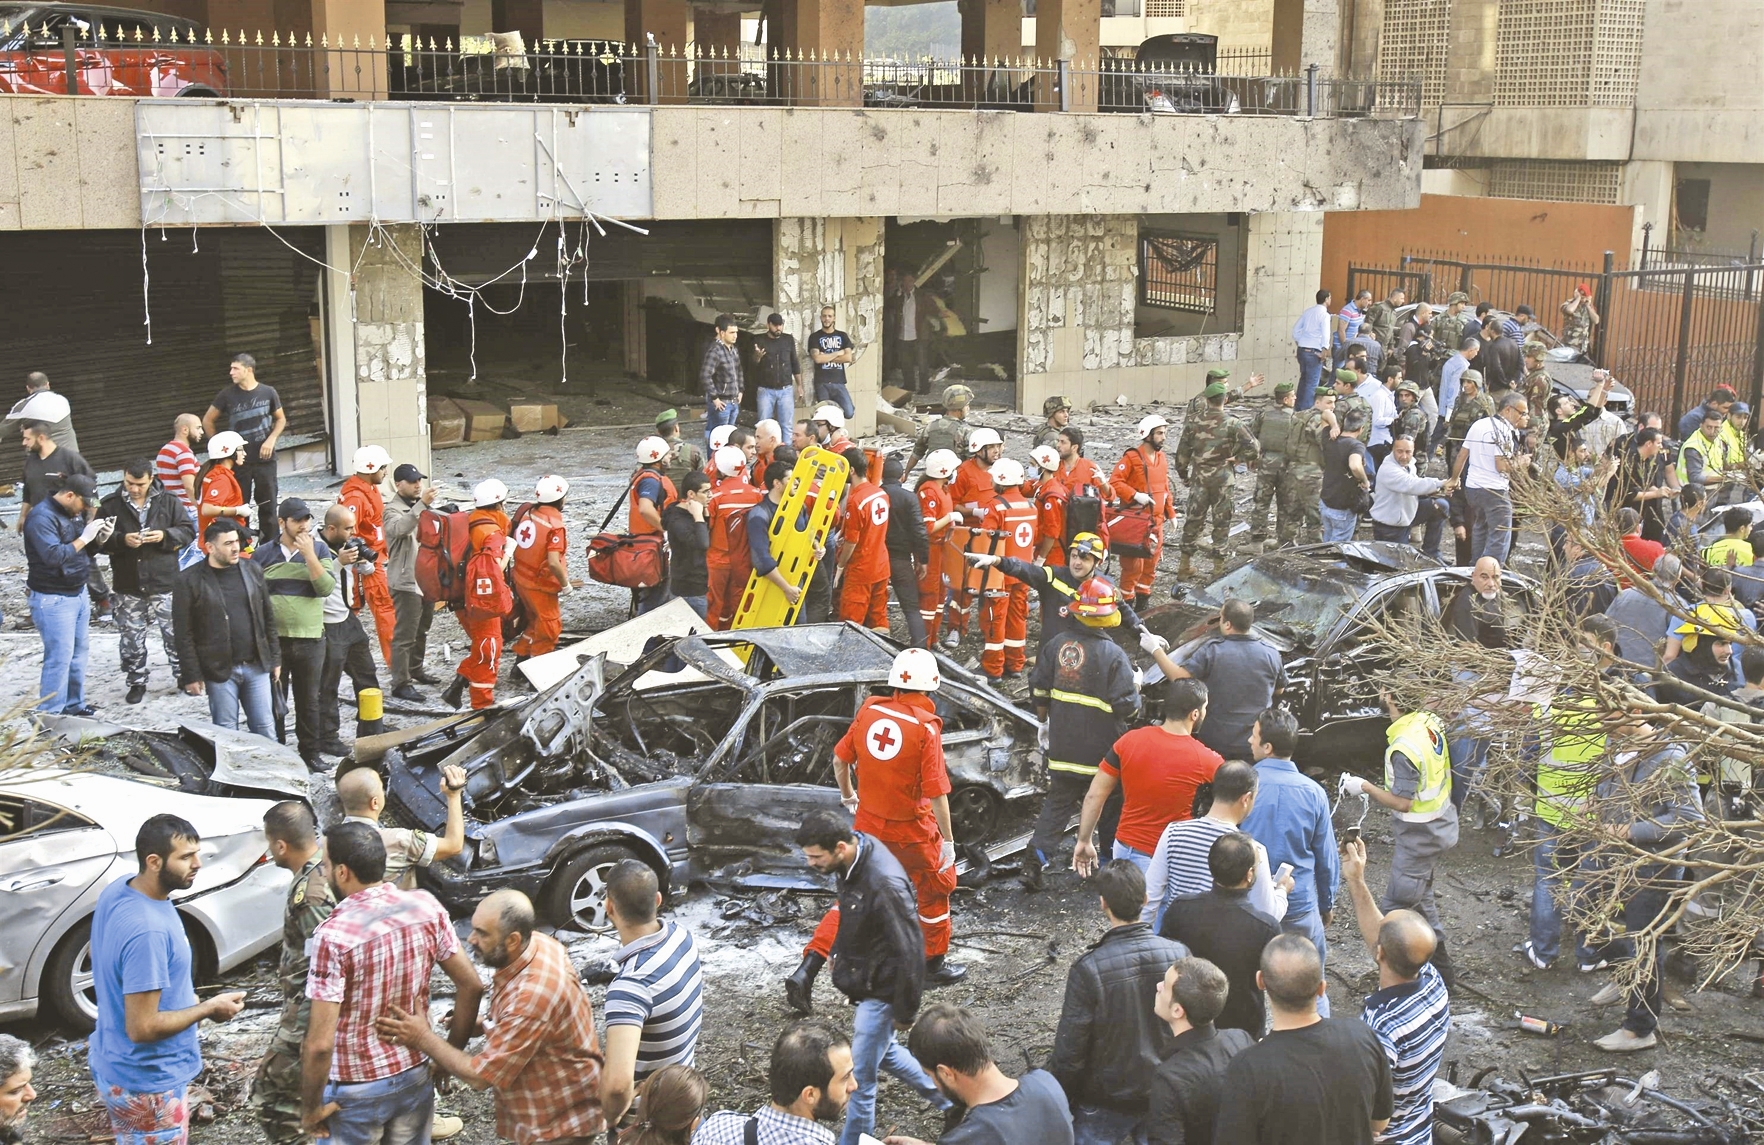 چندی پیش در اقدامی تروریستی، انفجارهایی مقابل سفارت ایران در بیروت موجب شهادت چند دیپلمات شد.